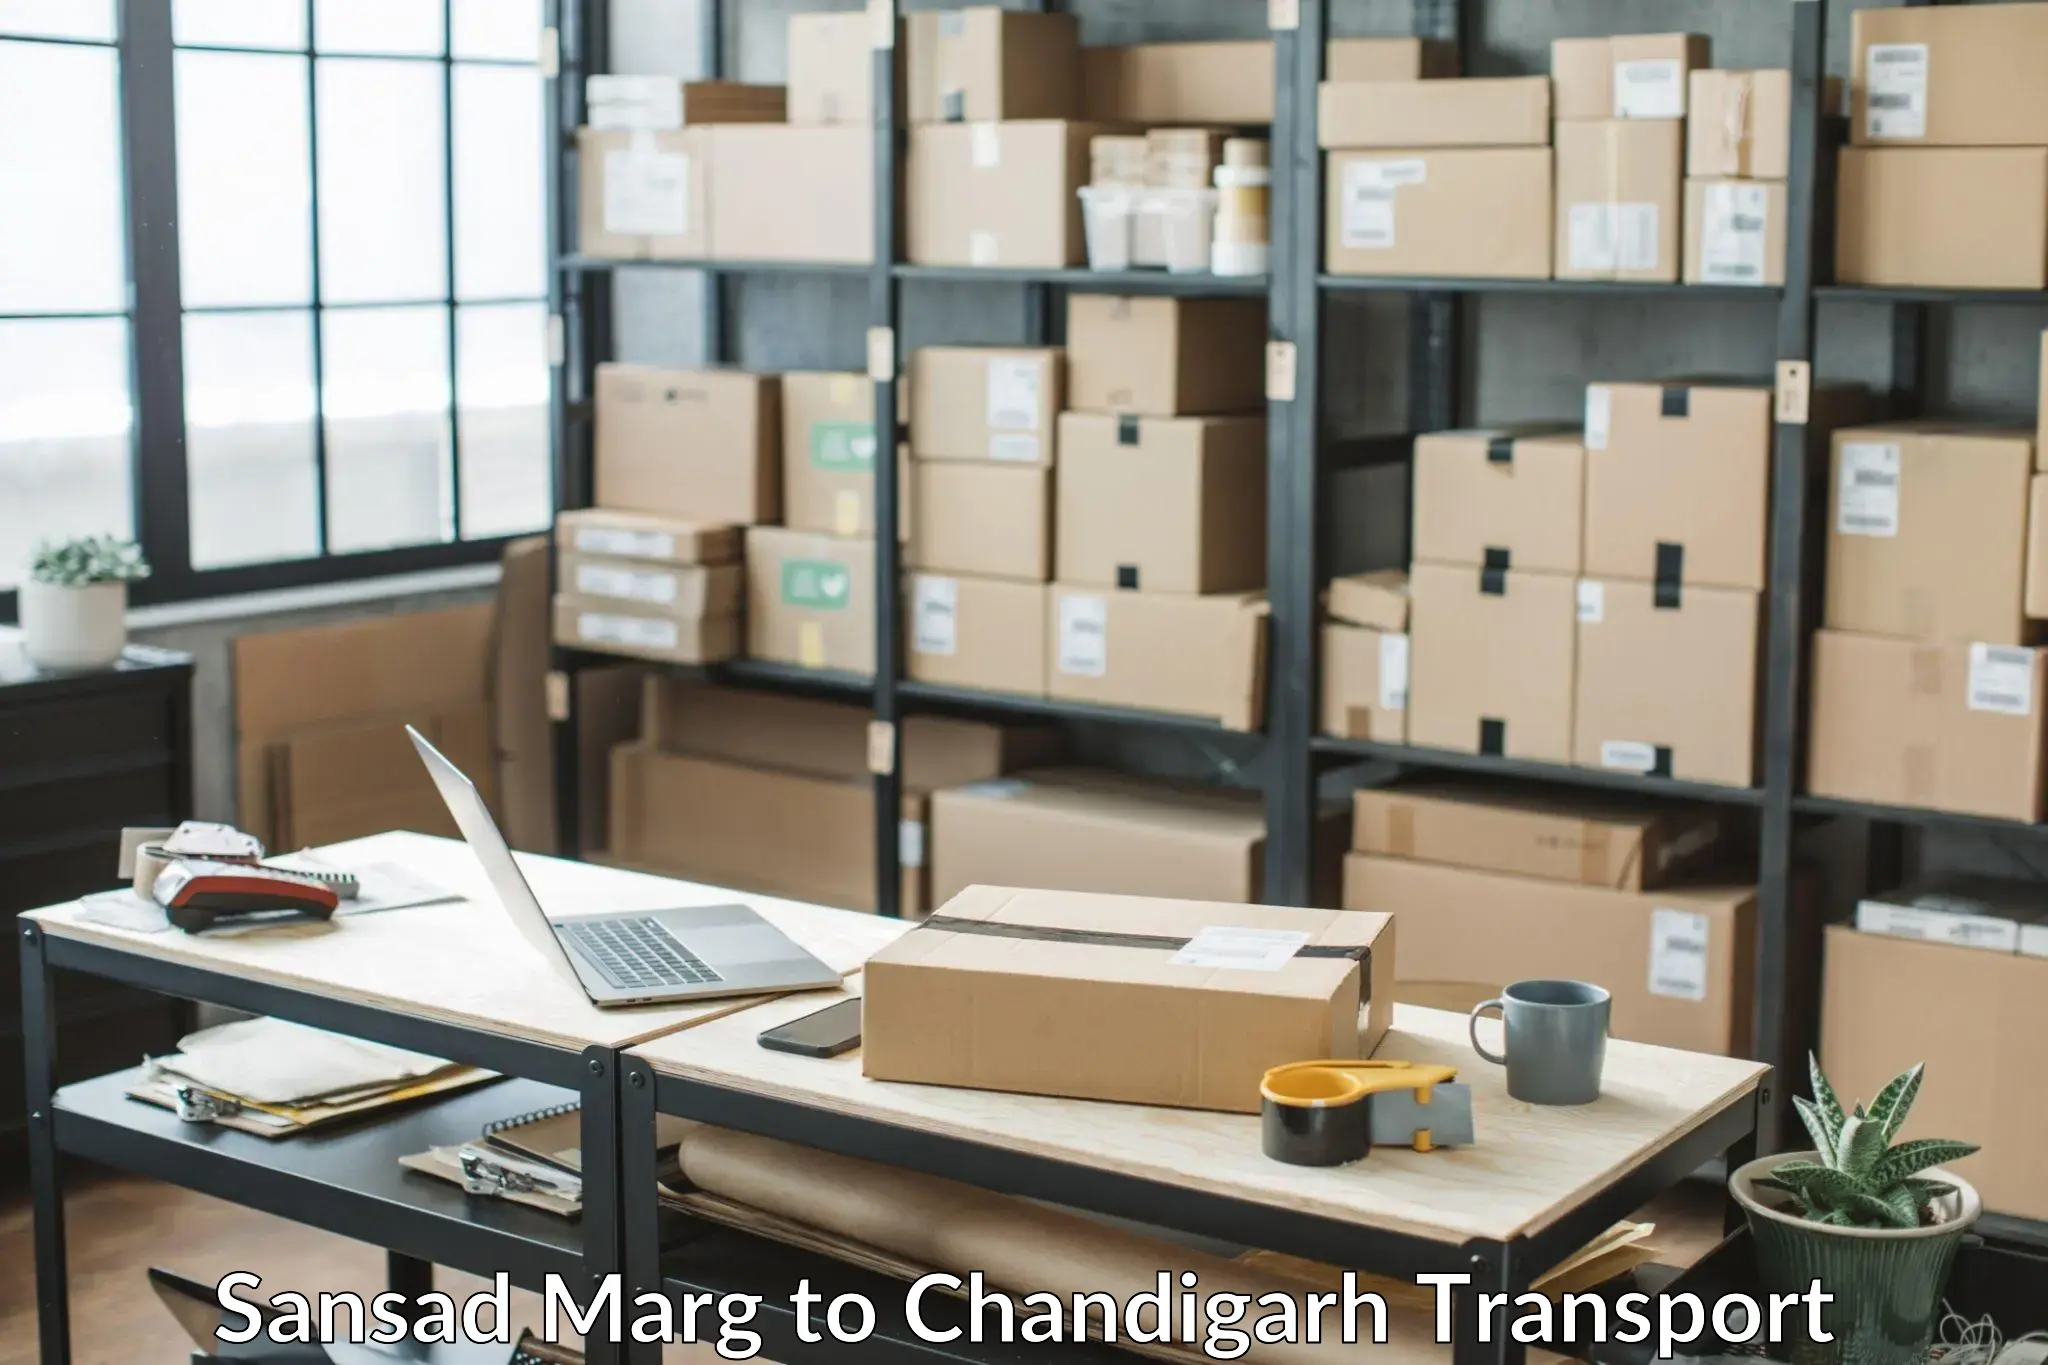 Interstate transport services Sansad Marg to Chandigarh